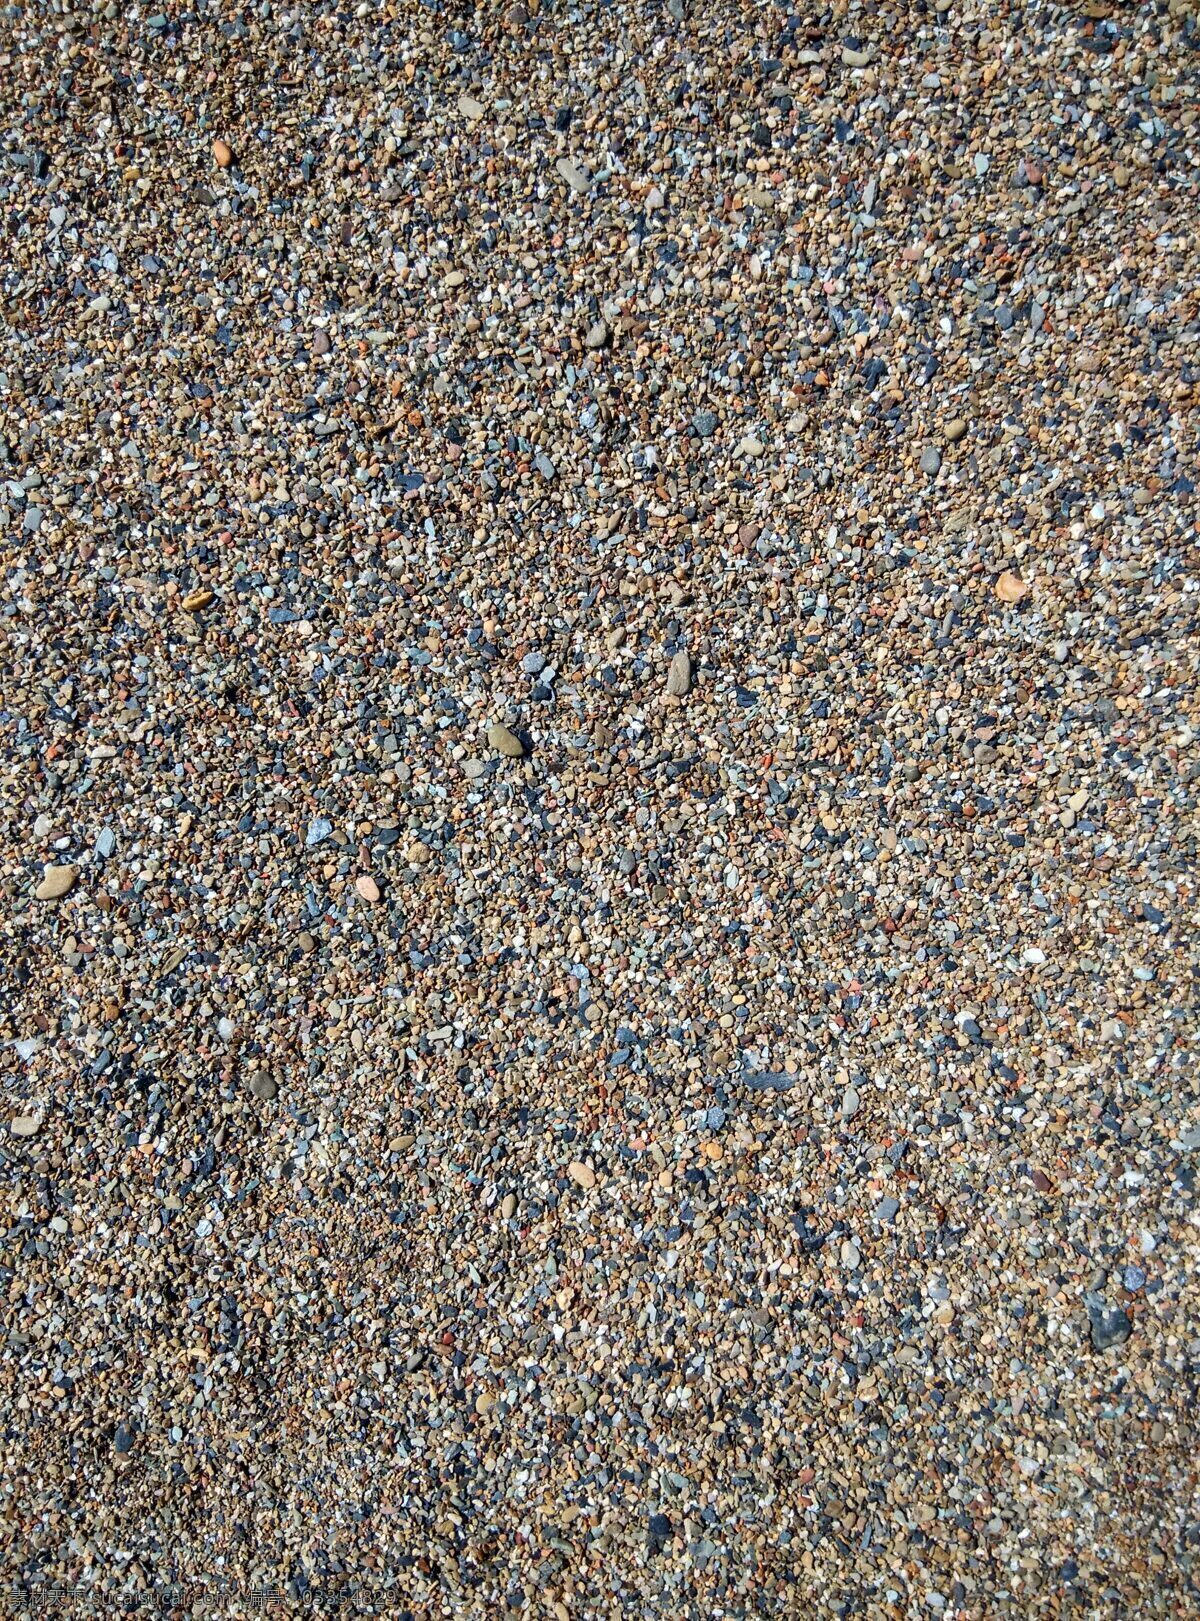 砂砾背景 砂砾 海边 小颗粒 沙子 肌理构成 小石头 小砂砾 沙滩 照片图片 自然景观 山水风景